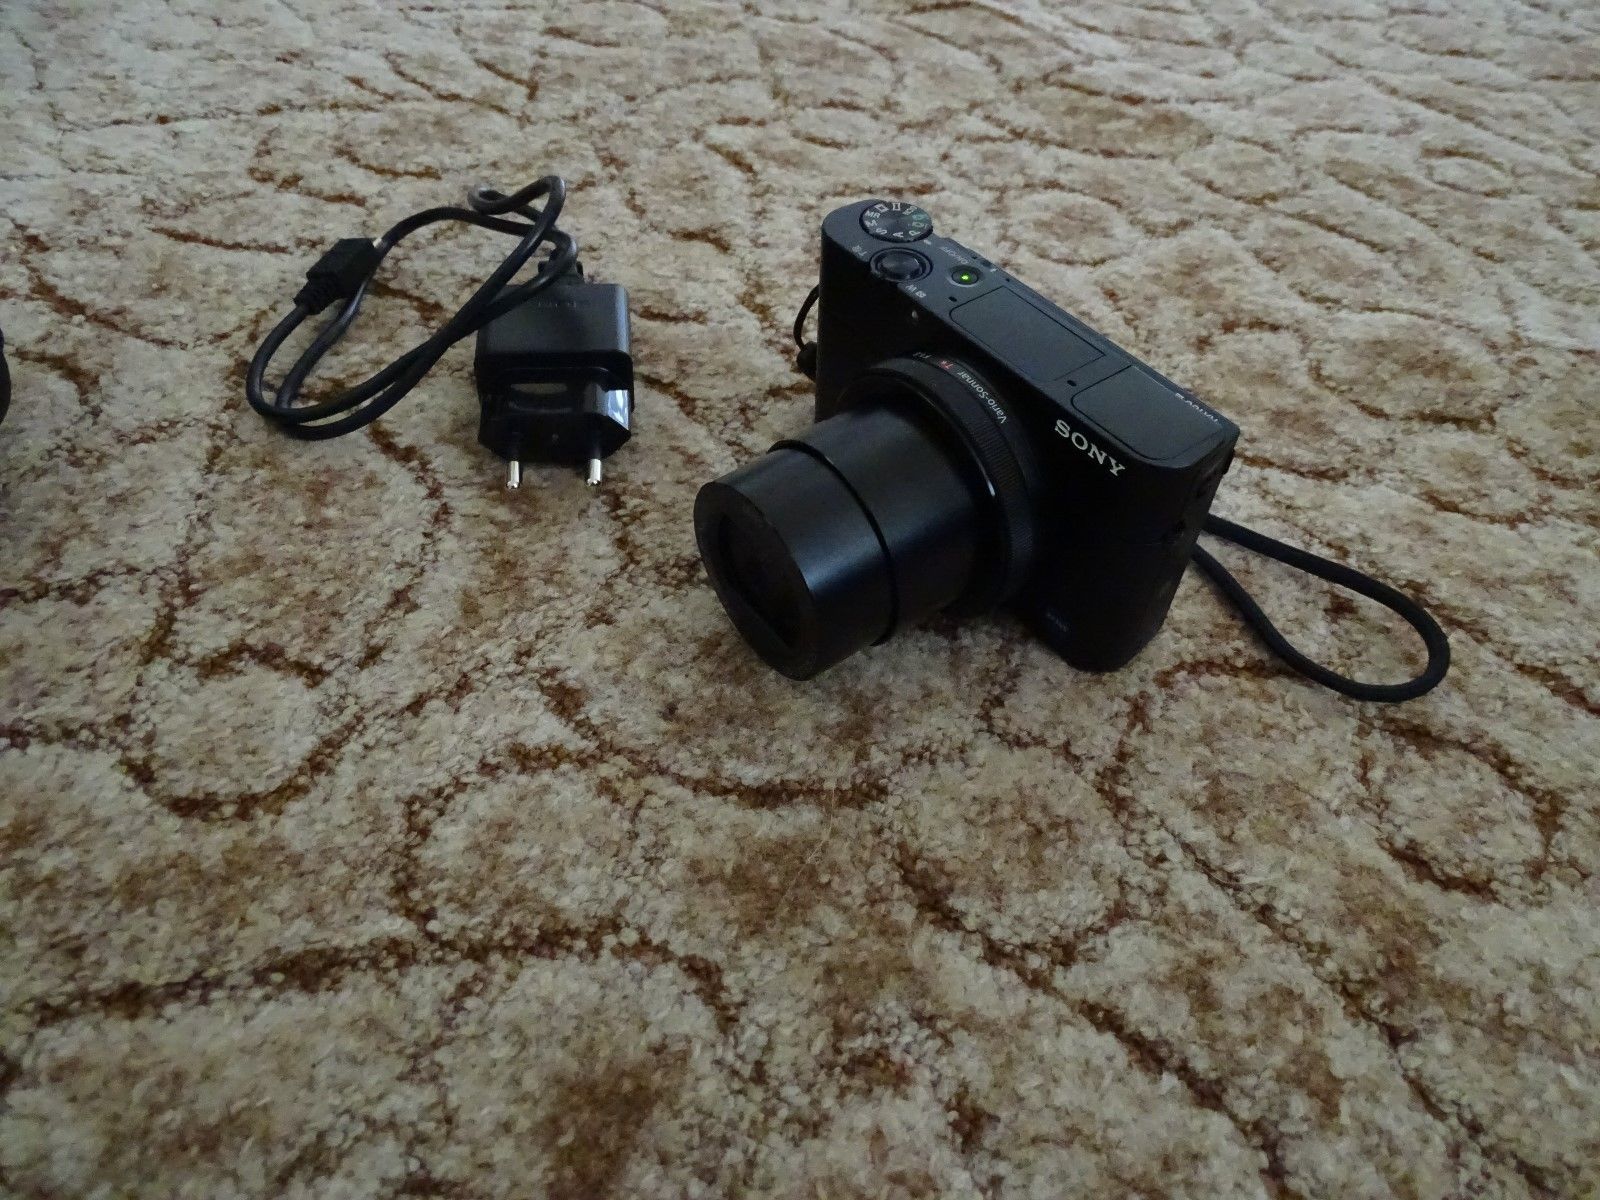 Kamera Sony cybershot RX100 III in Schwarz 20,2 MegaPixel